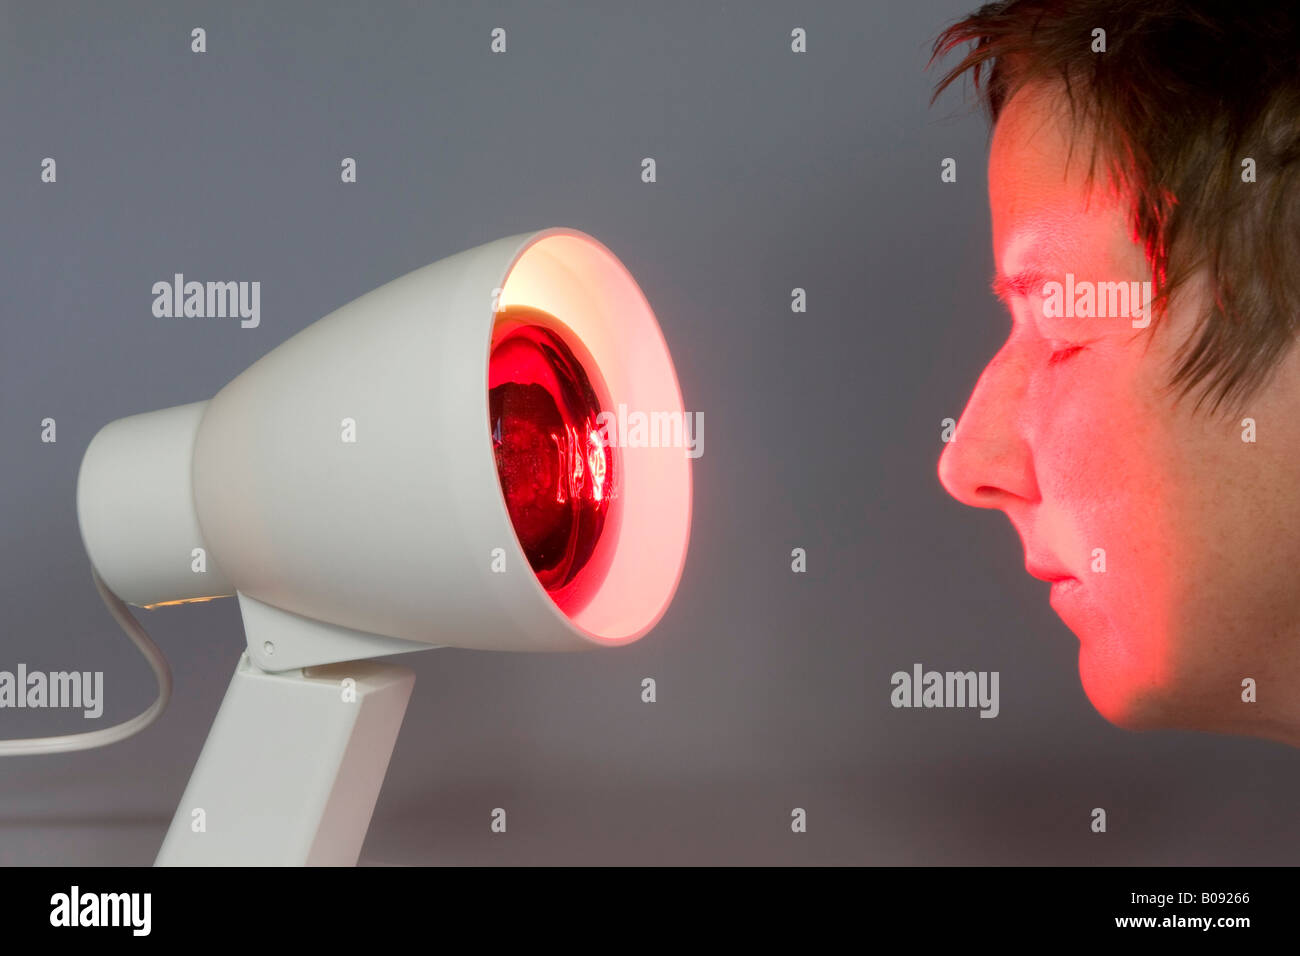 Infrarot-Lampe, Licht strahlen auf das Gesicht einer Frau Stockfotografie -  Alamy